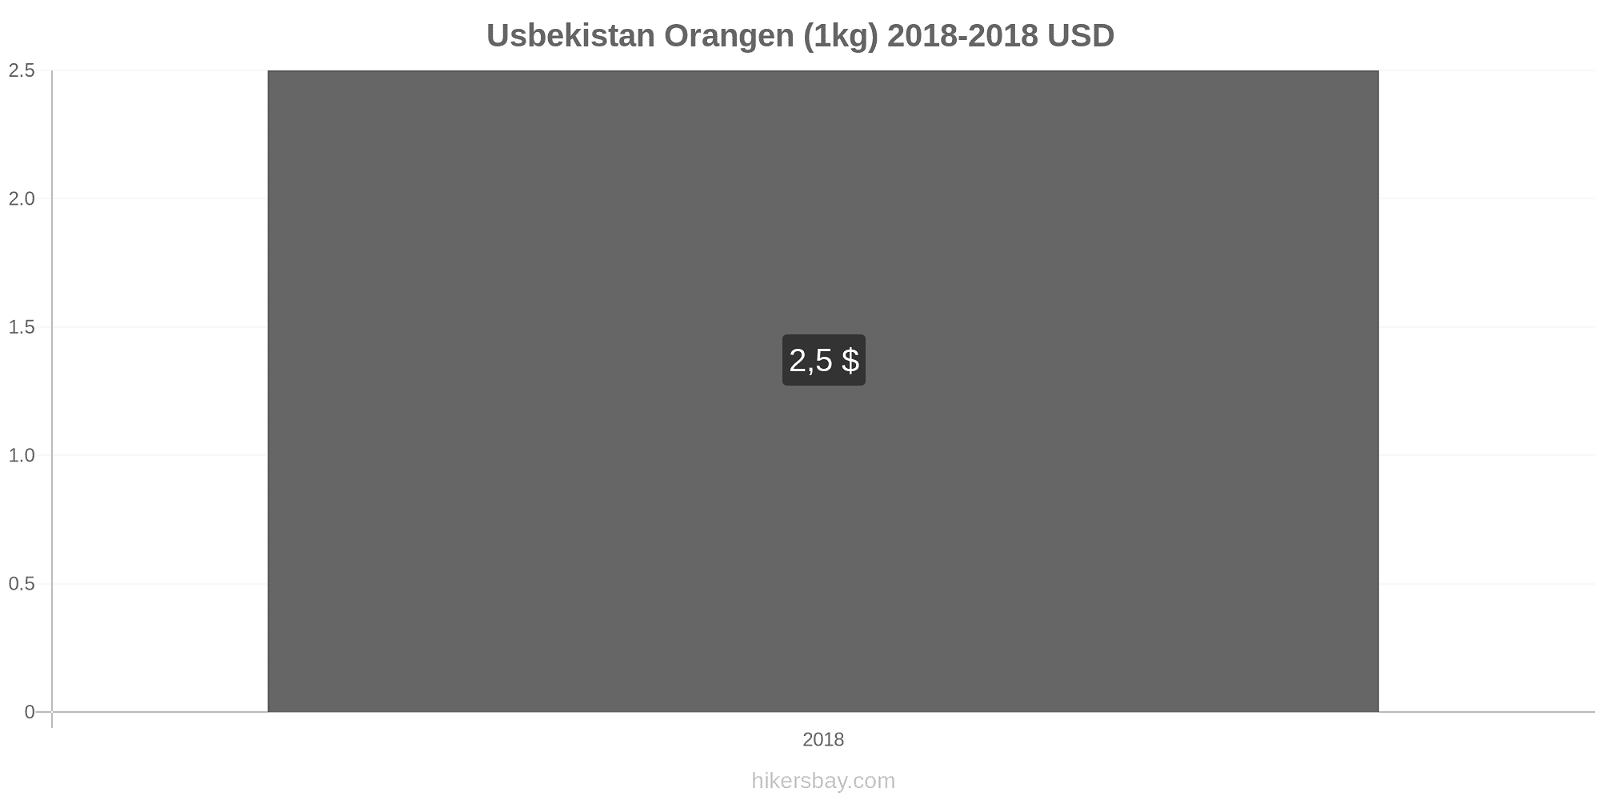 Usbekistan Preisänderungen Orangen (1kg) hikersbay.com